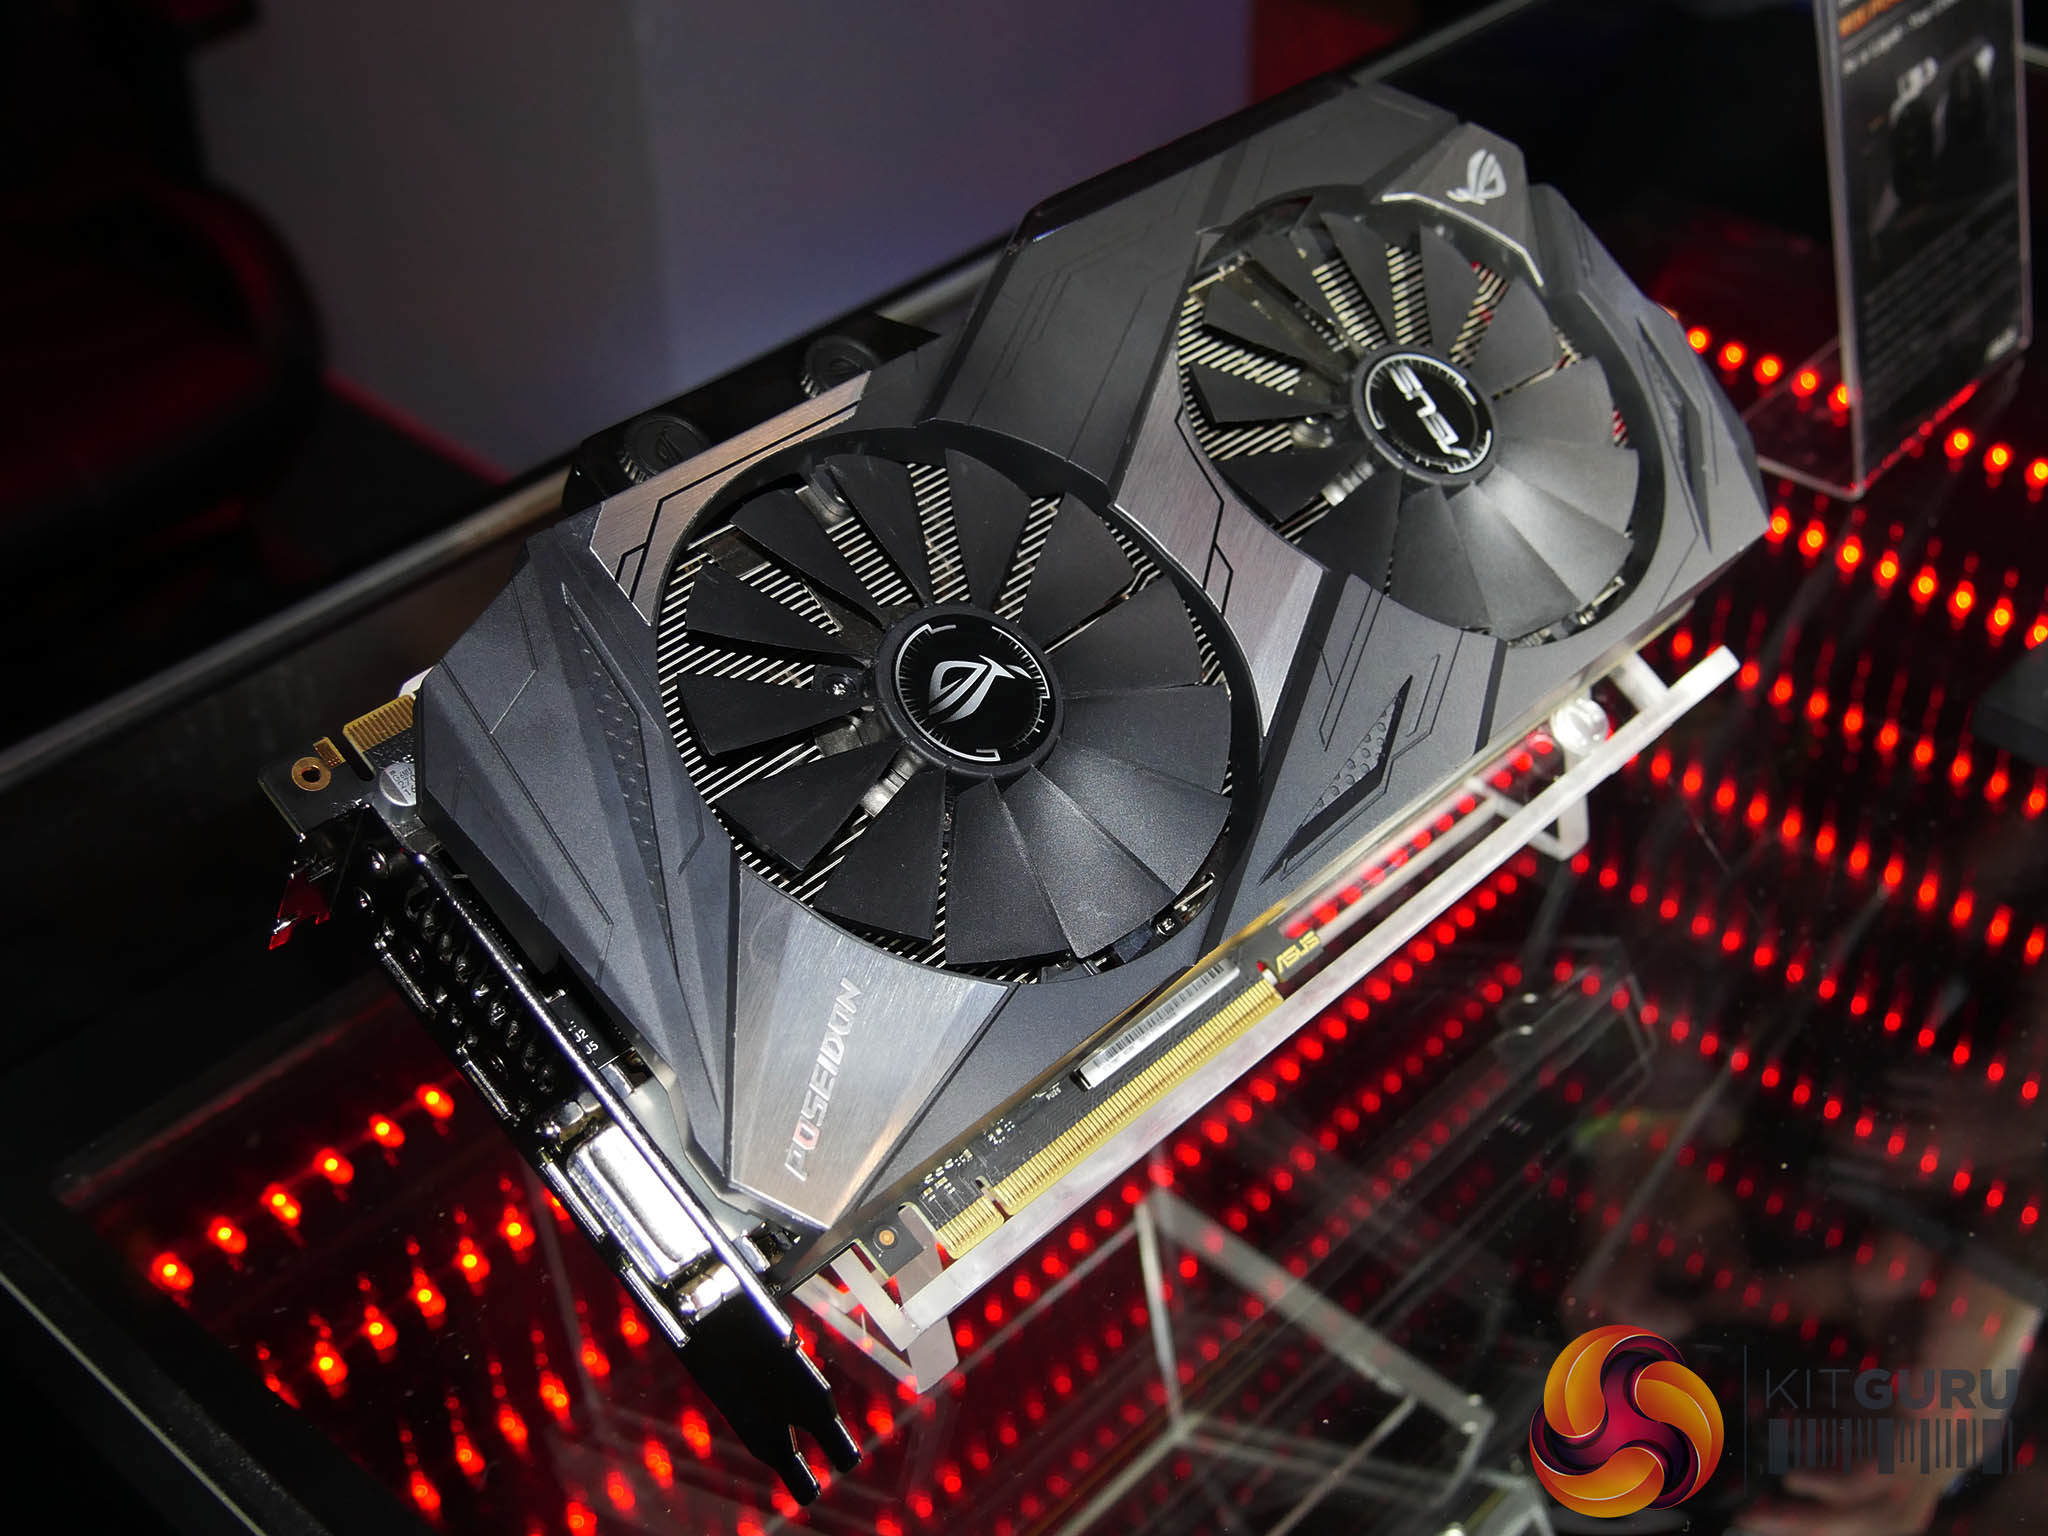 Immagine pubblicata in relazione al seguente contenuto: ASUS mostra la GeForce GTX 1080 Ti ROG Poseidon con cooler ibrido aria/liquido | Nome immagine: news26095_ASUS-GeForce-GTX-1080-Ti-ROG-Poseidon_1.jpg